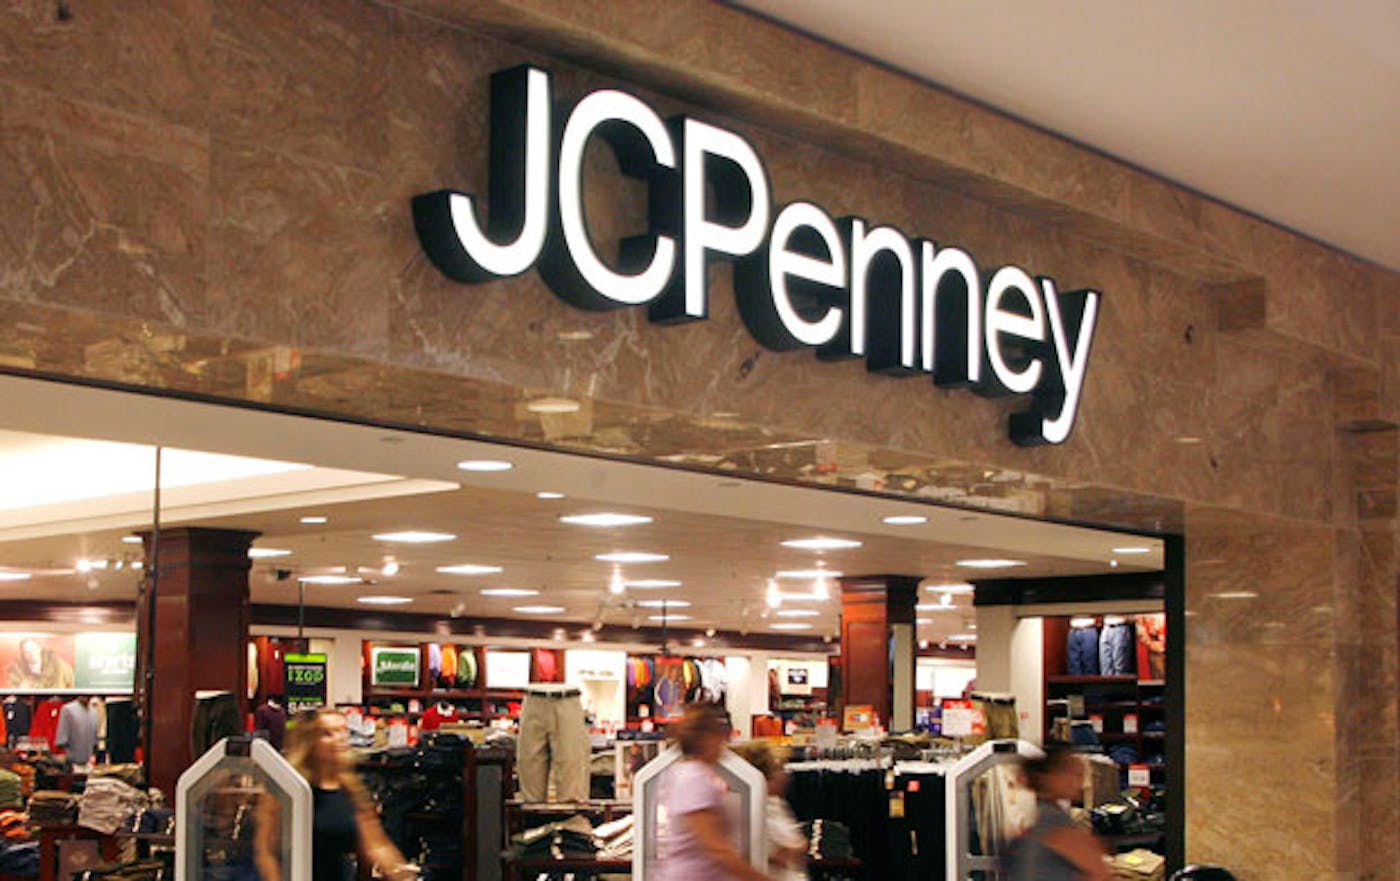 Любой магазин. J C Penney. JC Penney Company. Американская сеть универмагов jcpenney. Интернет магазин Dillards Store.